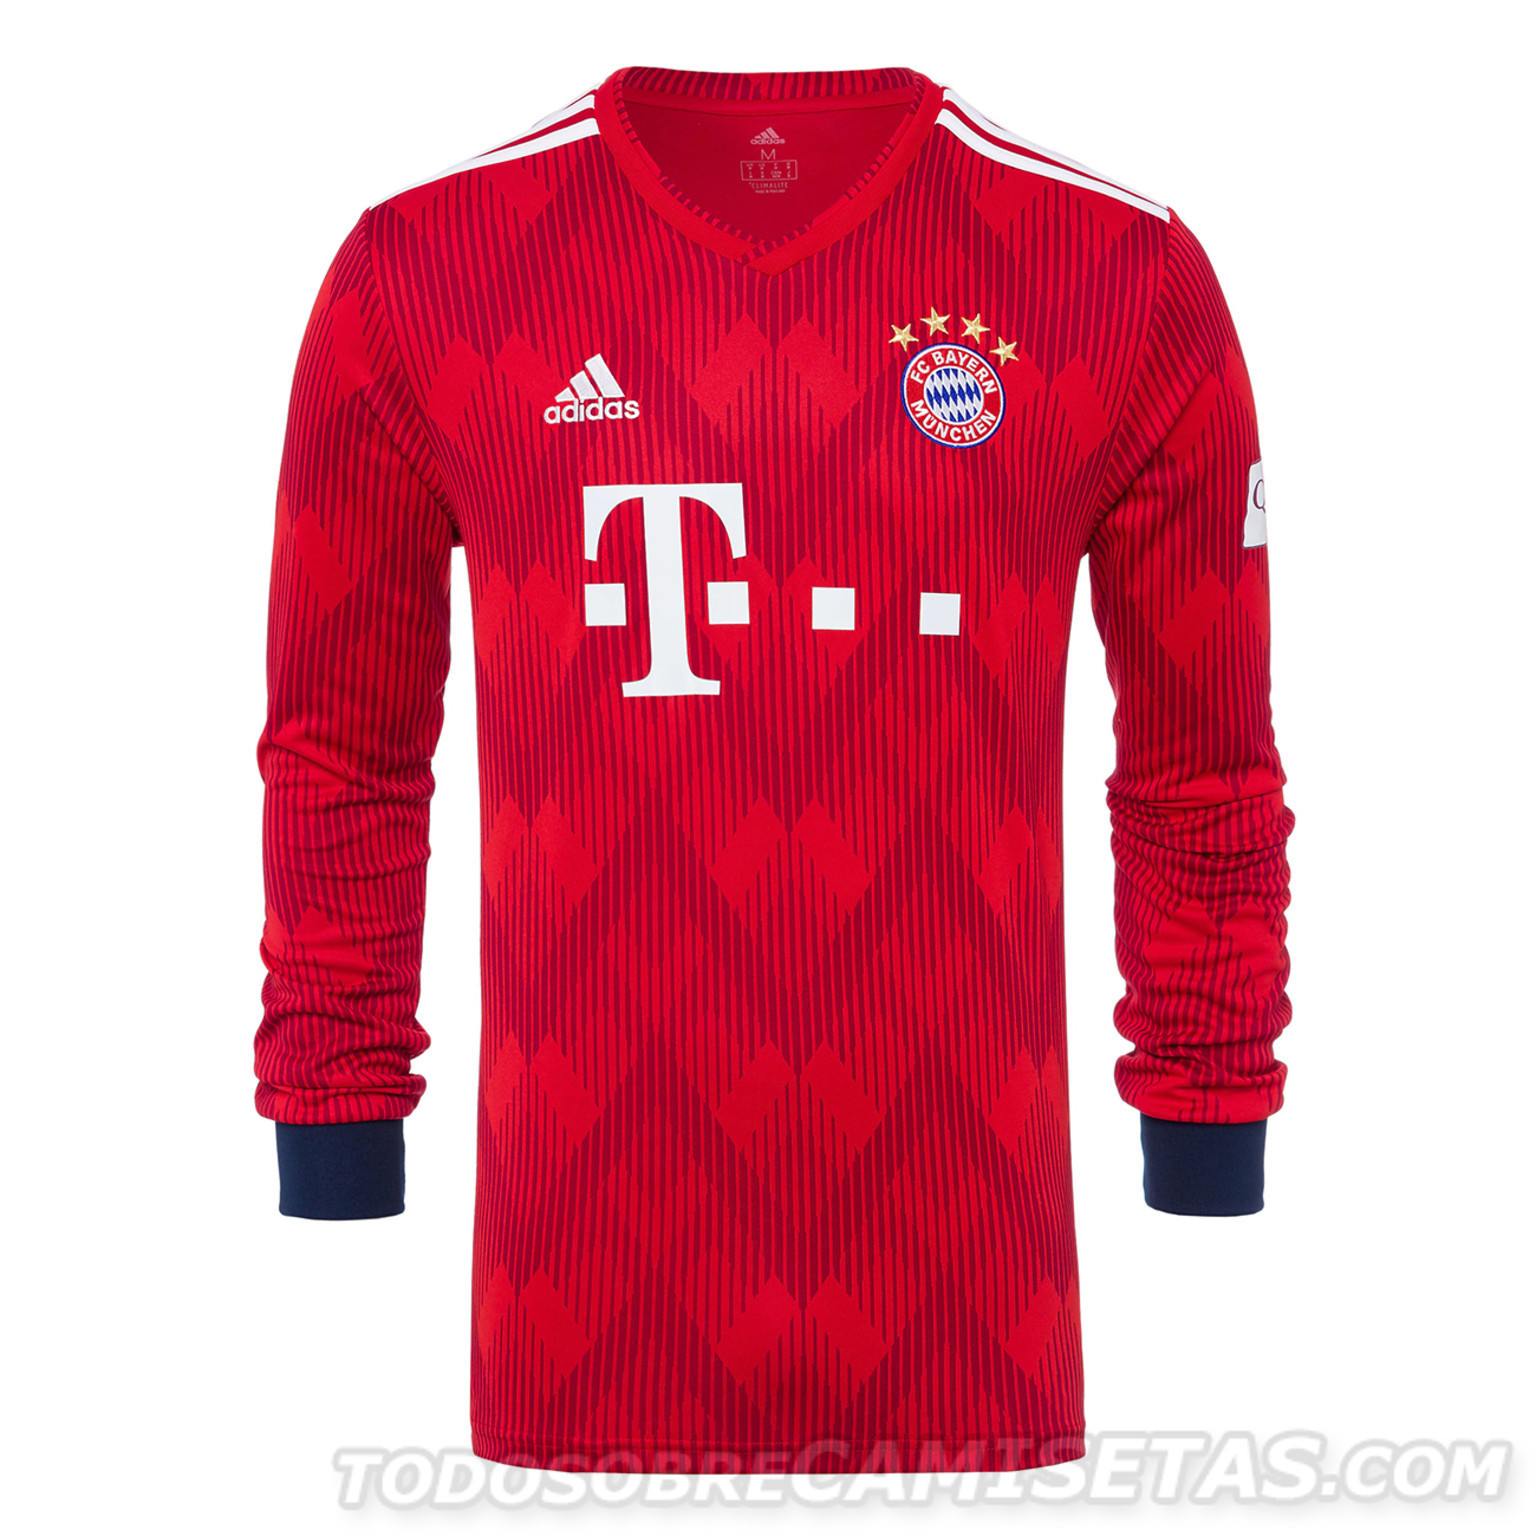 Bayern-Munich-2018-19-adidas-new-home-kit-8.jpg